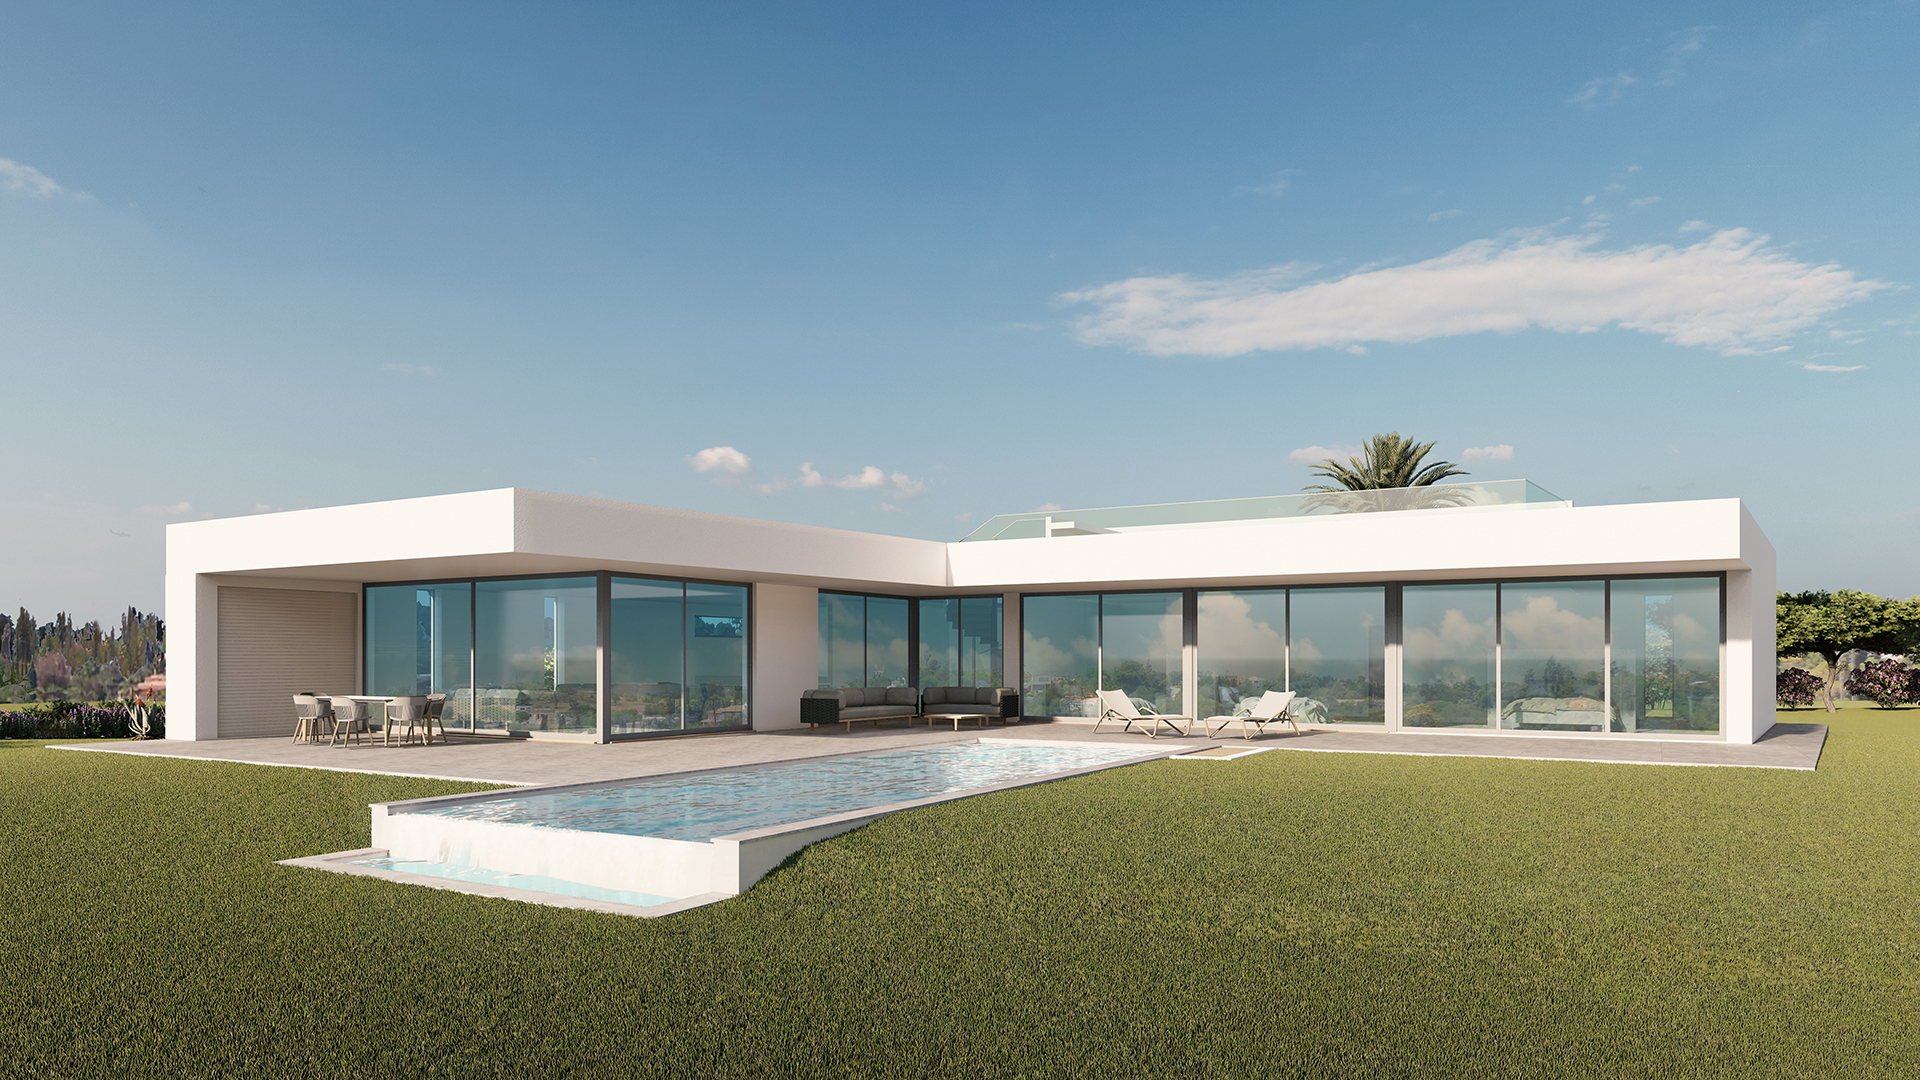 CONSTRUCTION COMMENCE BIENTÔT - Villa moderne de 3 chambres avec piscine et vue sur la mer, près de Lagos | LG990 Le projet est en phase d'approbation, la construction commencera en conséquence. Une villa moderne de 3 chambres avec grande piscine et garage sur un terrain de 3162 m².